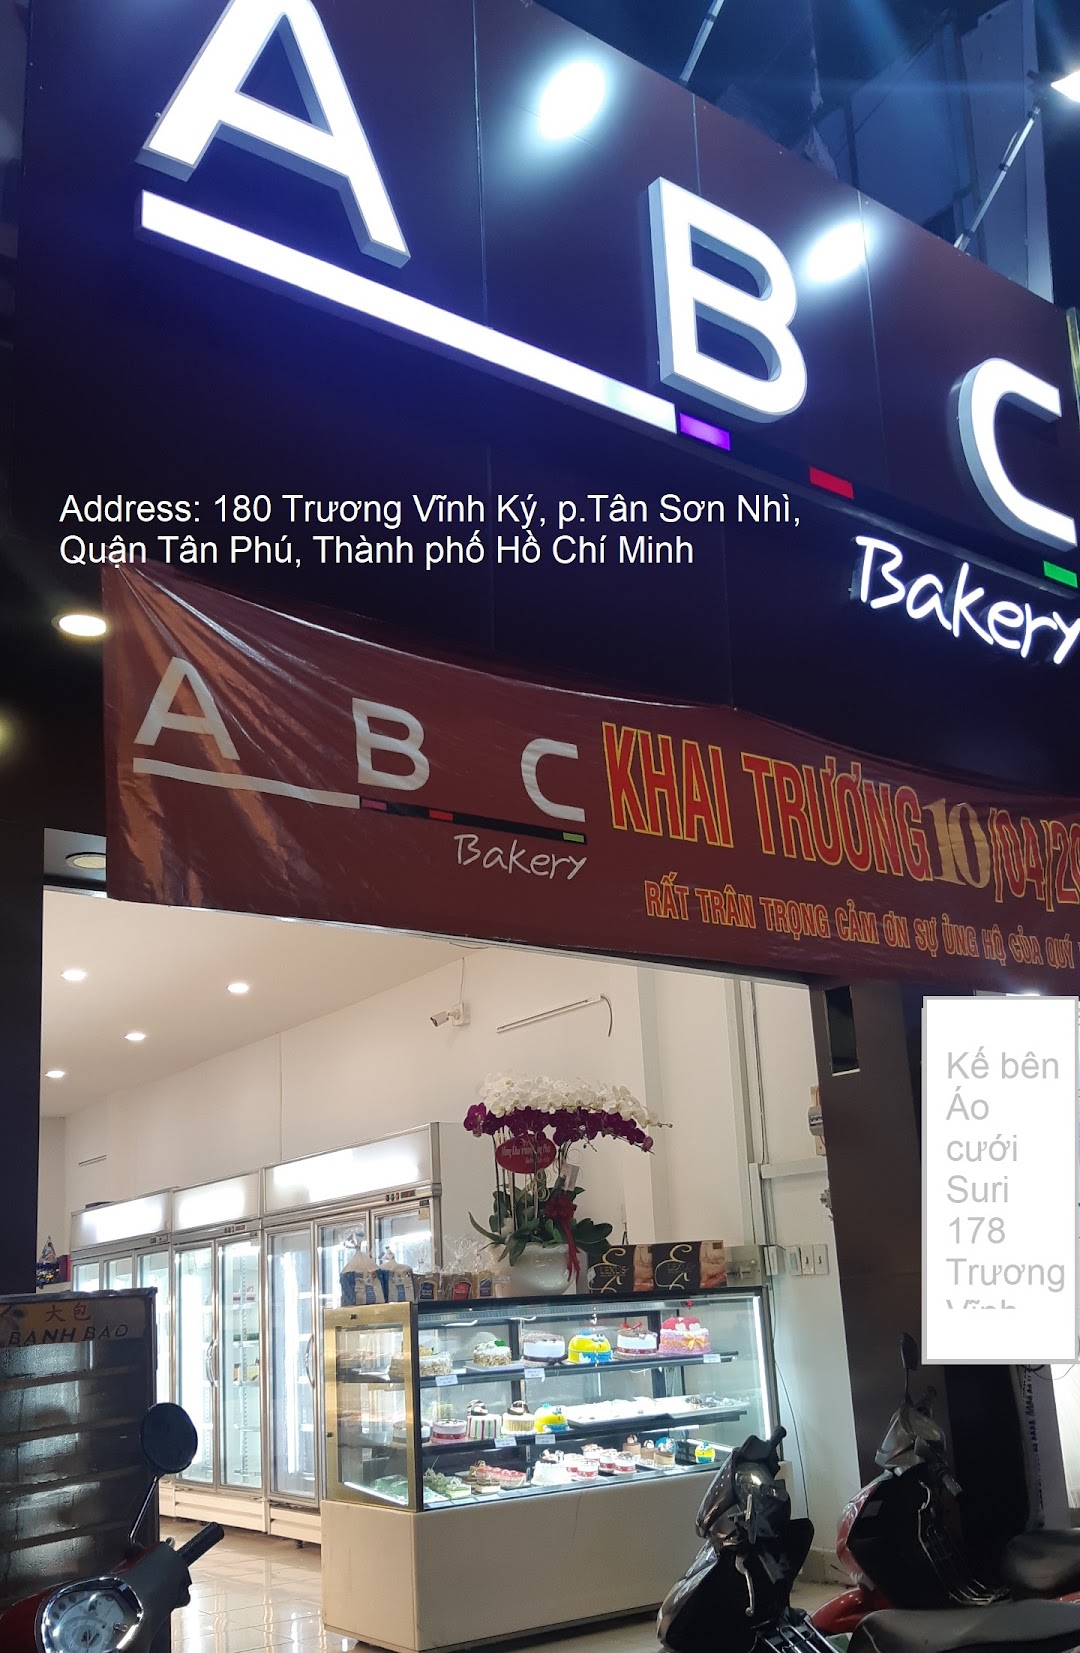 ABC Bakery Trương Vĩnh Ký - bánh kem sinh nhật, bông lan trứng muối, Tiramisu & đặt tiệc ngọt